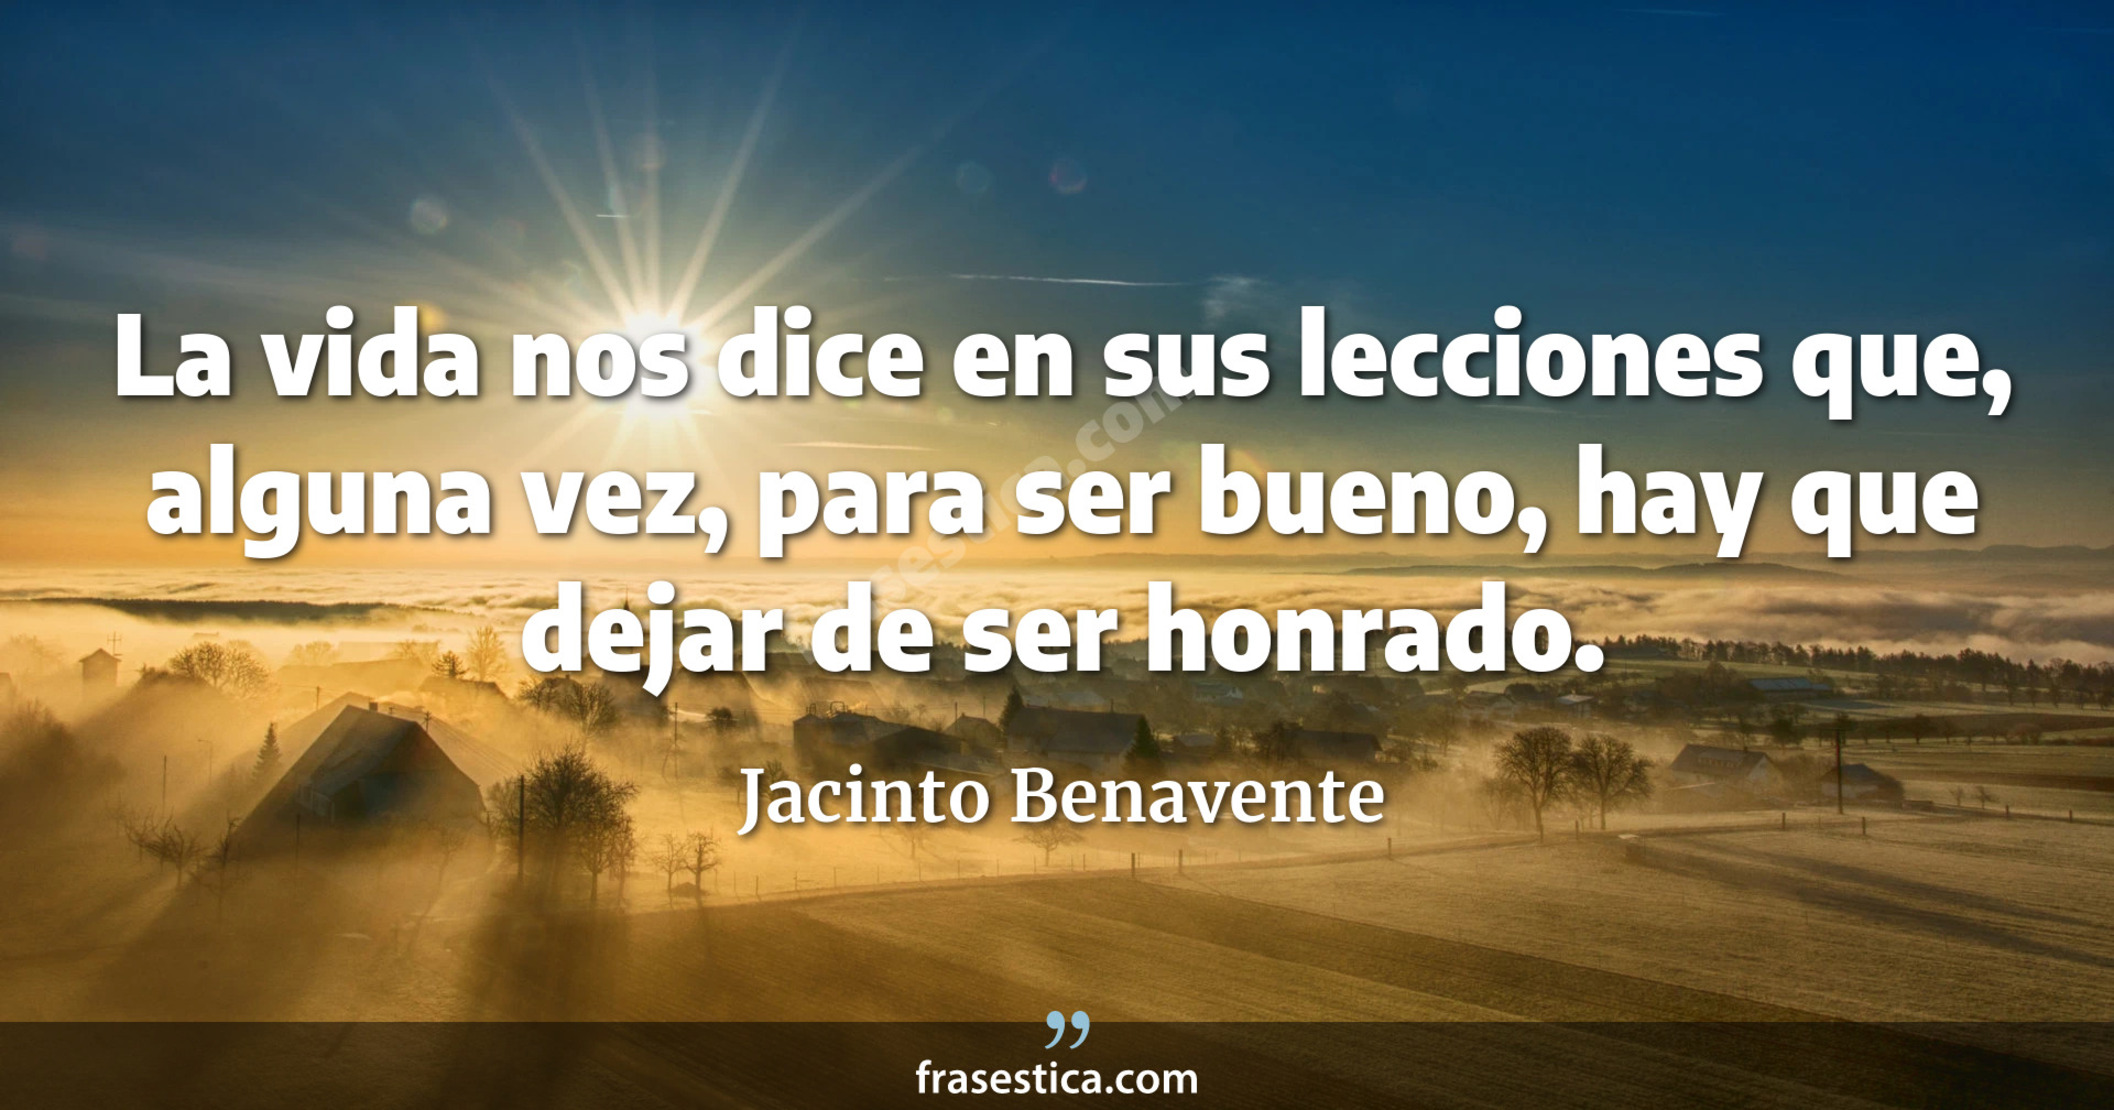 La vida nos dice en sus lecciones que, alguna vez, para ser bueno, hay que dejar de ser honrado. - Jacinto Benavente